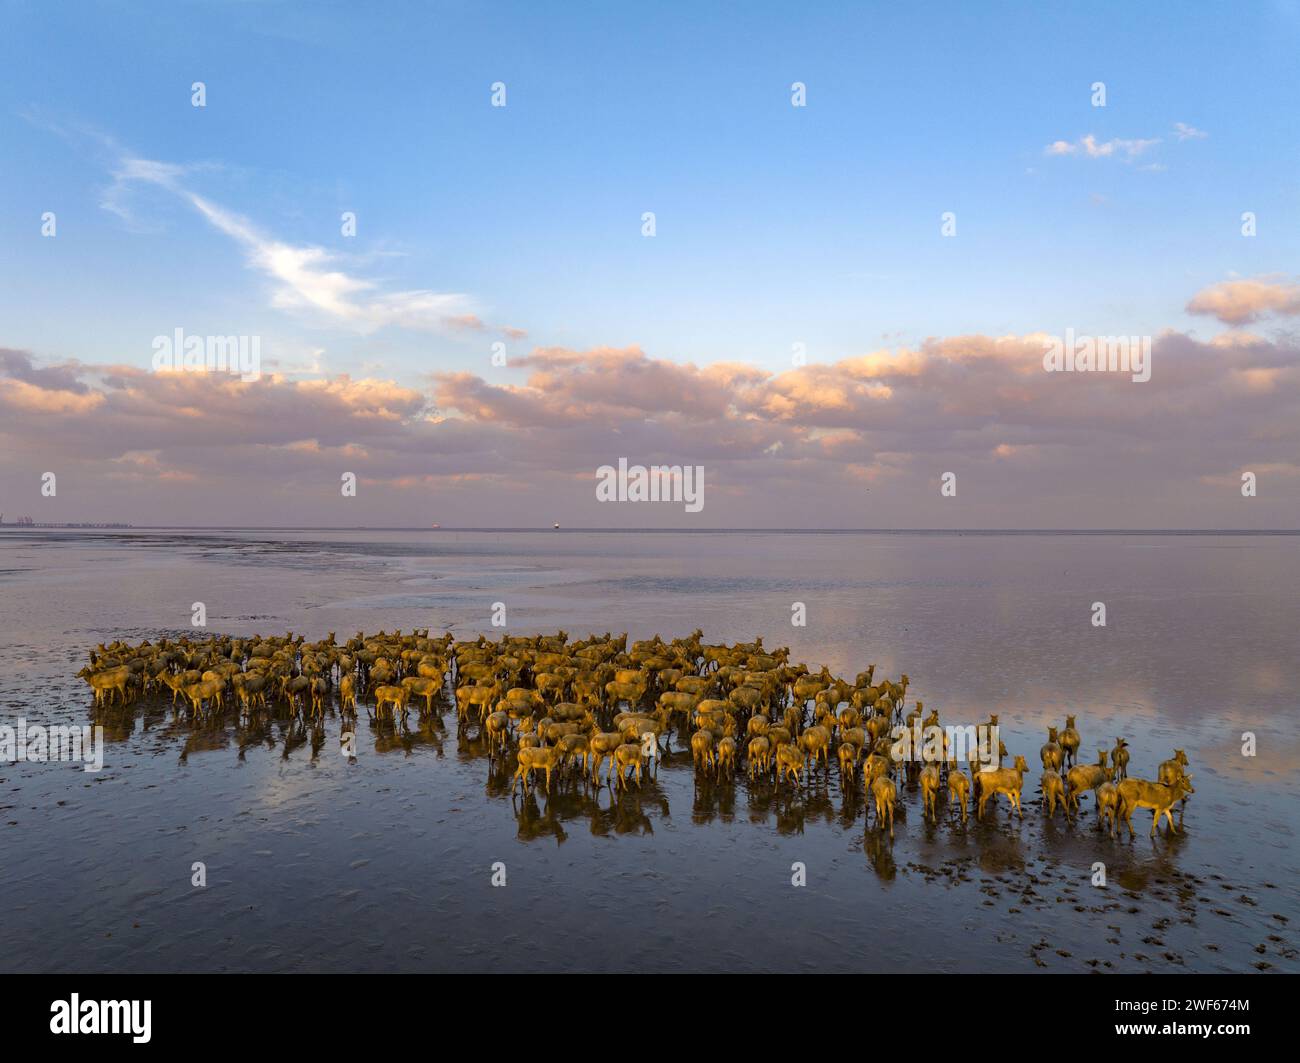 Élan dans la zone de protection des zones humides de la mer jaune de Yancheng, province du Jiangsu Banque D'Images